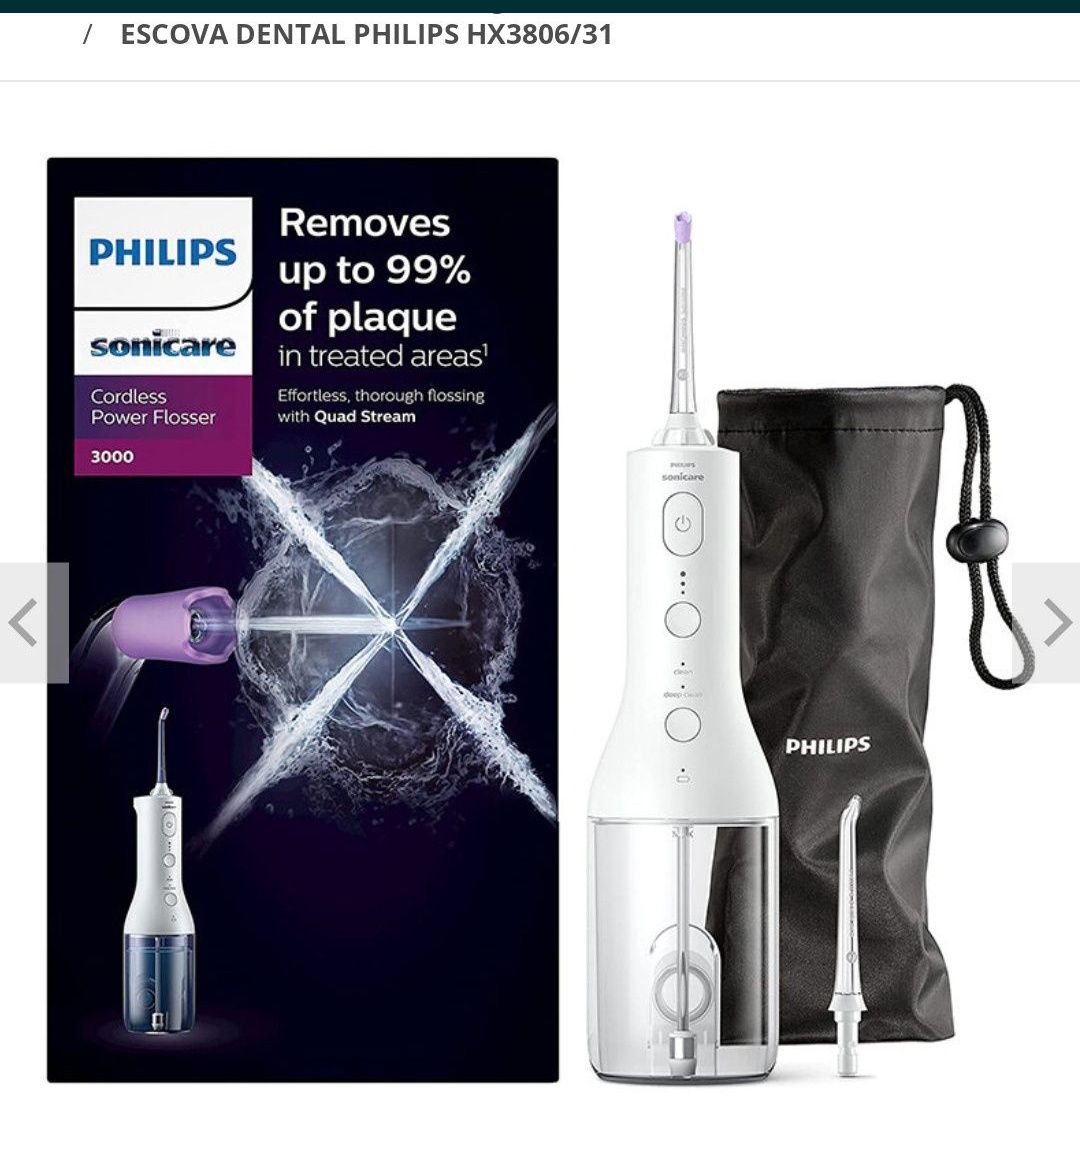 Escova dental Philips Hidropulsor e Fio Dental Elétrico HX3806/31.